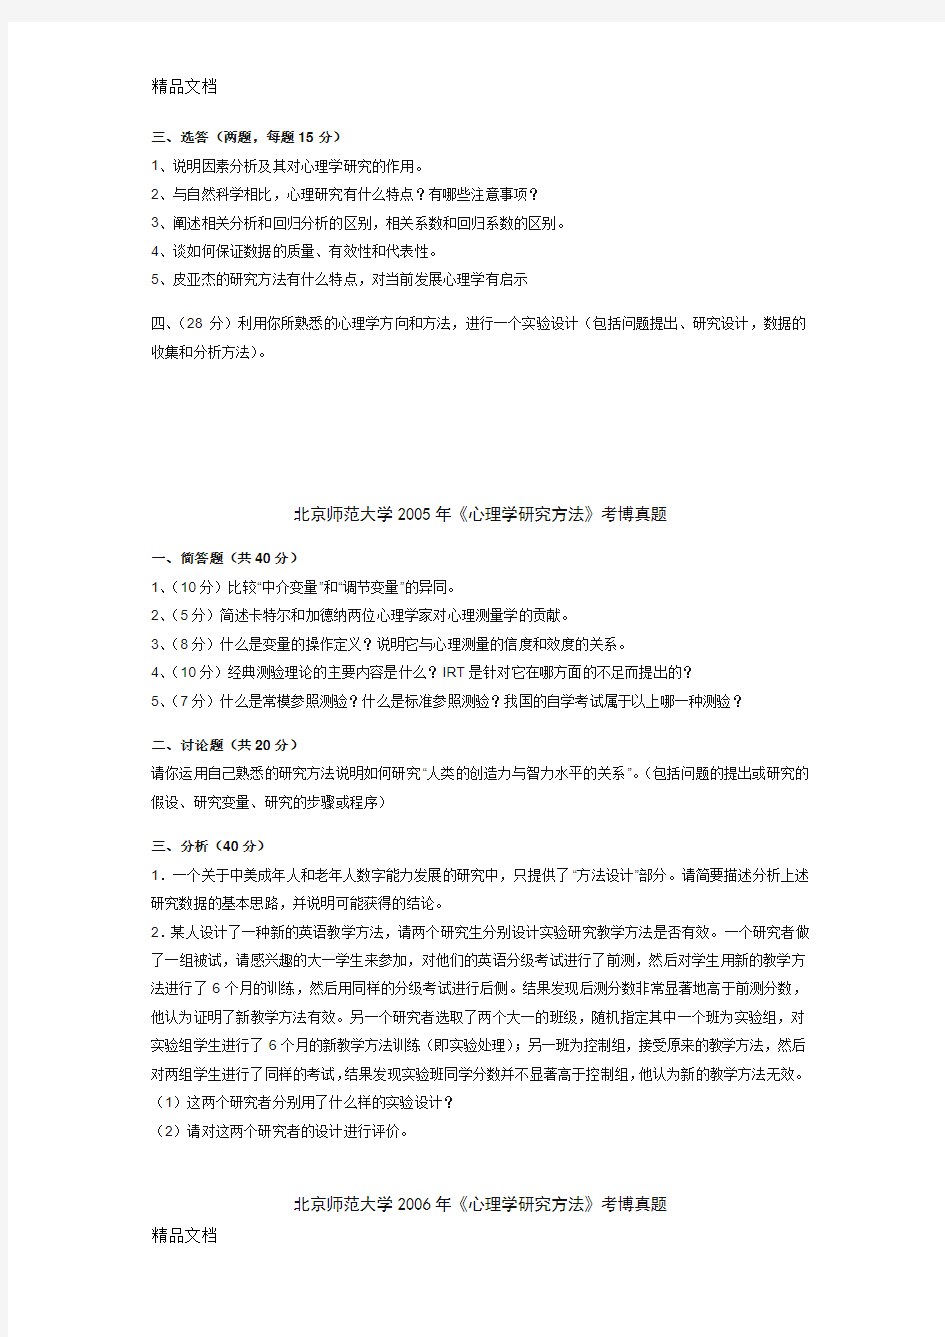 最新北京师范大学考博真题(心理学研究方法)资料